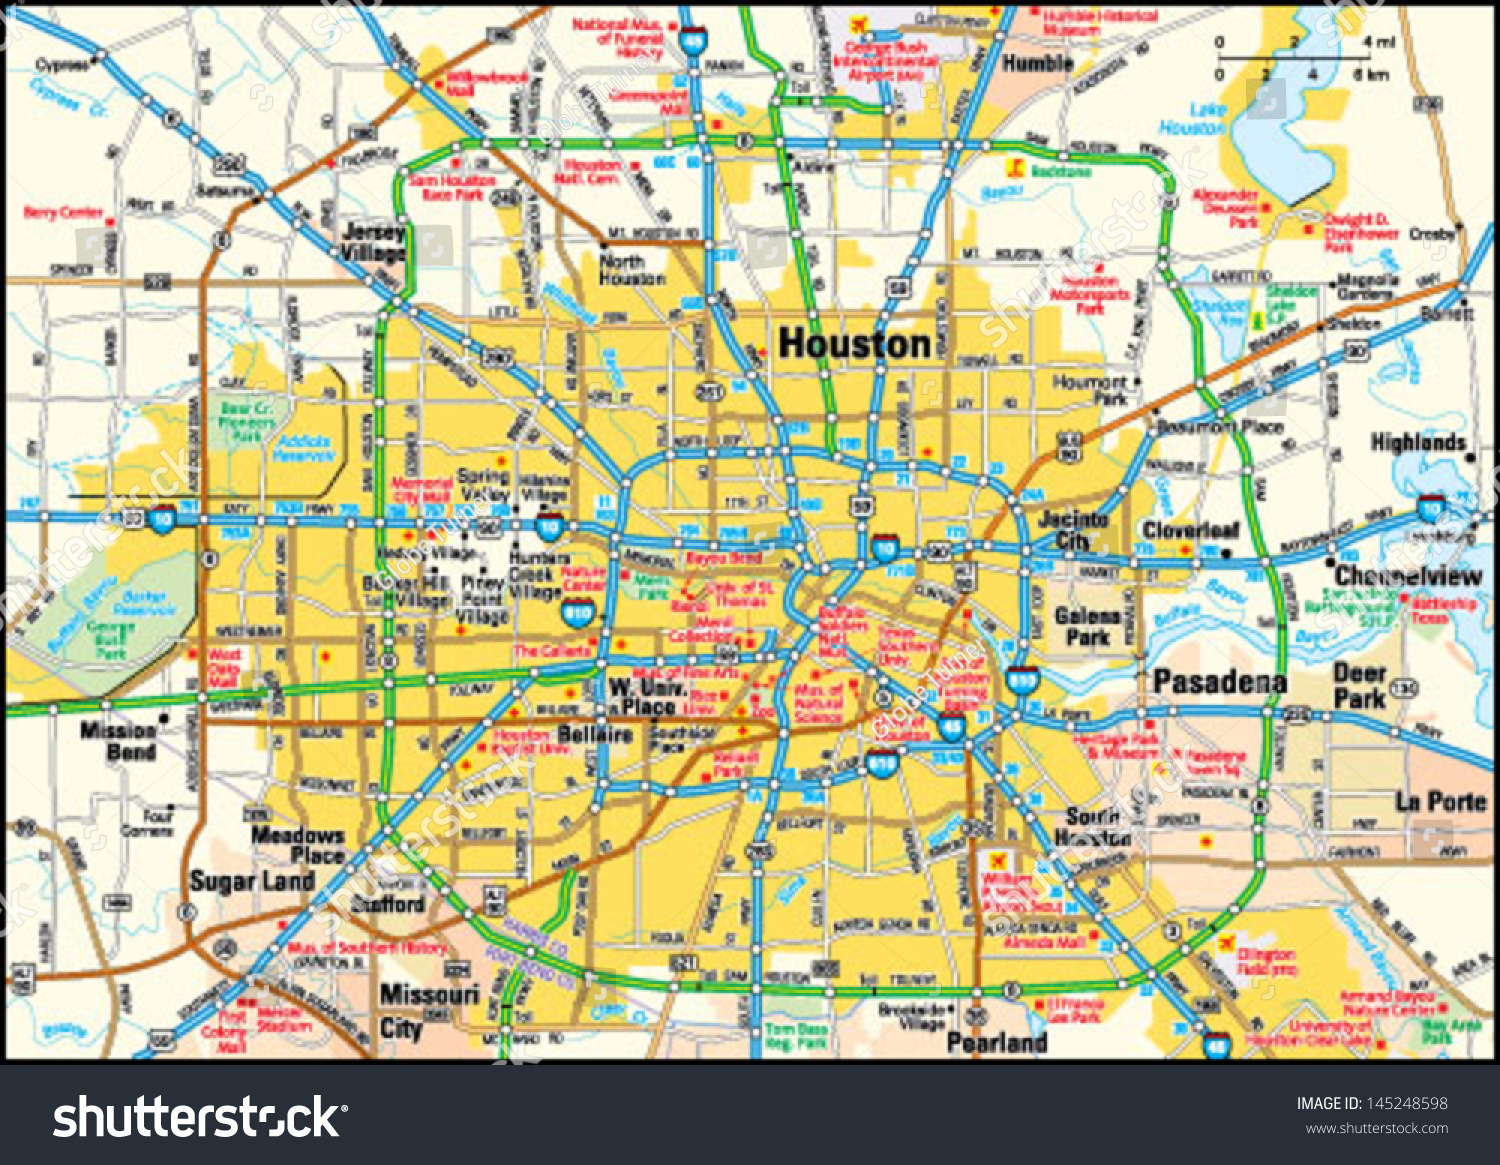 Houston Texas Area Map Vectores En Stock 145248598 Shutterstock